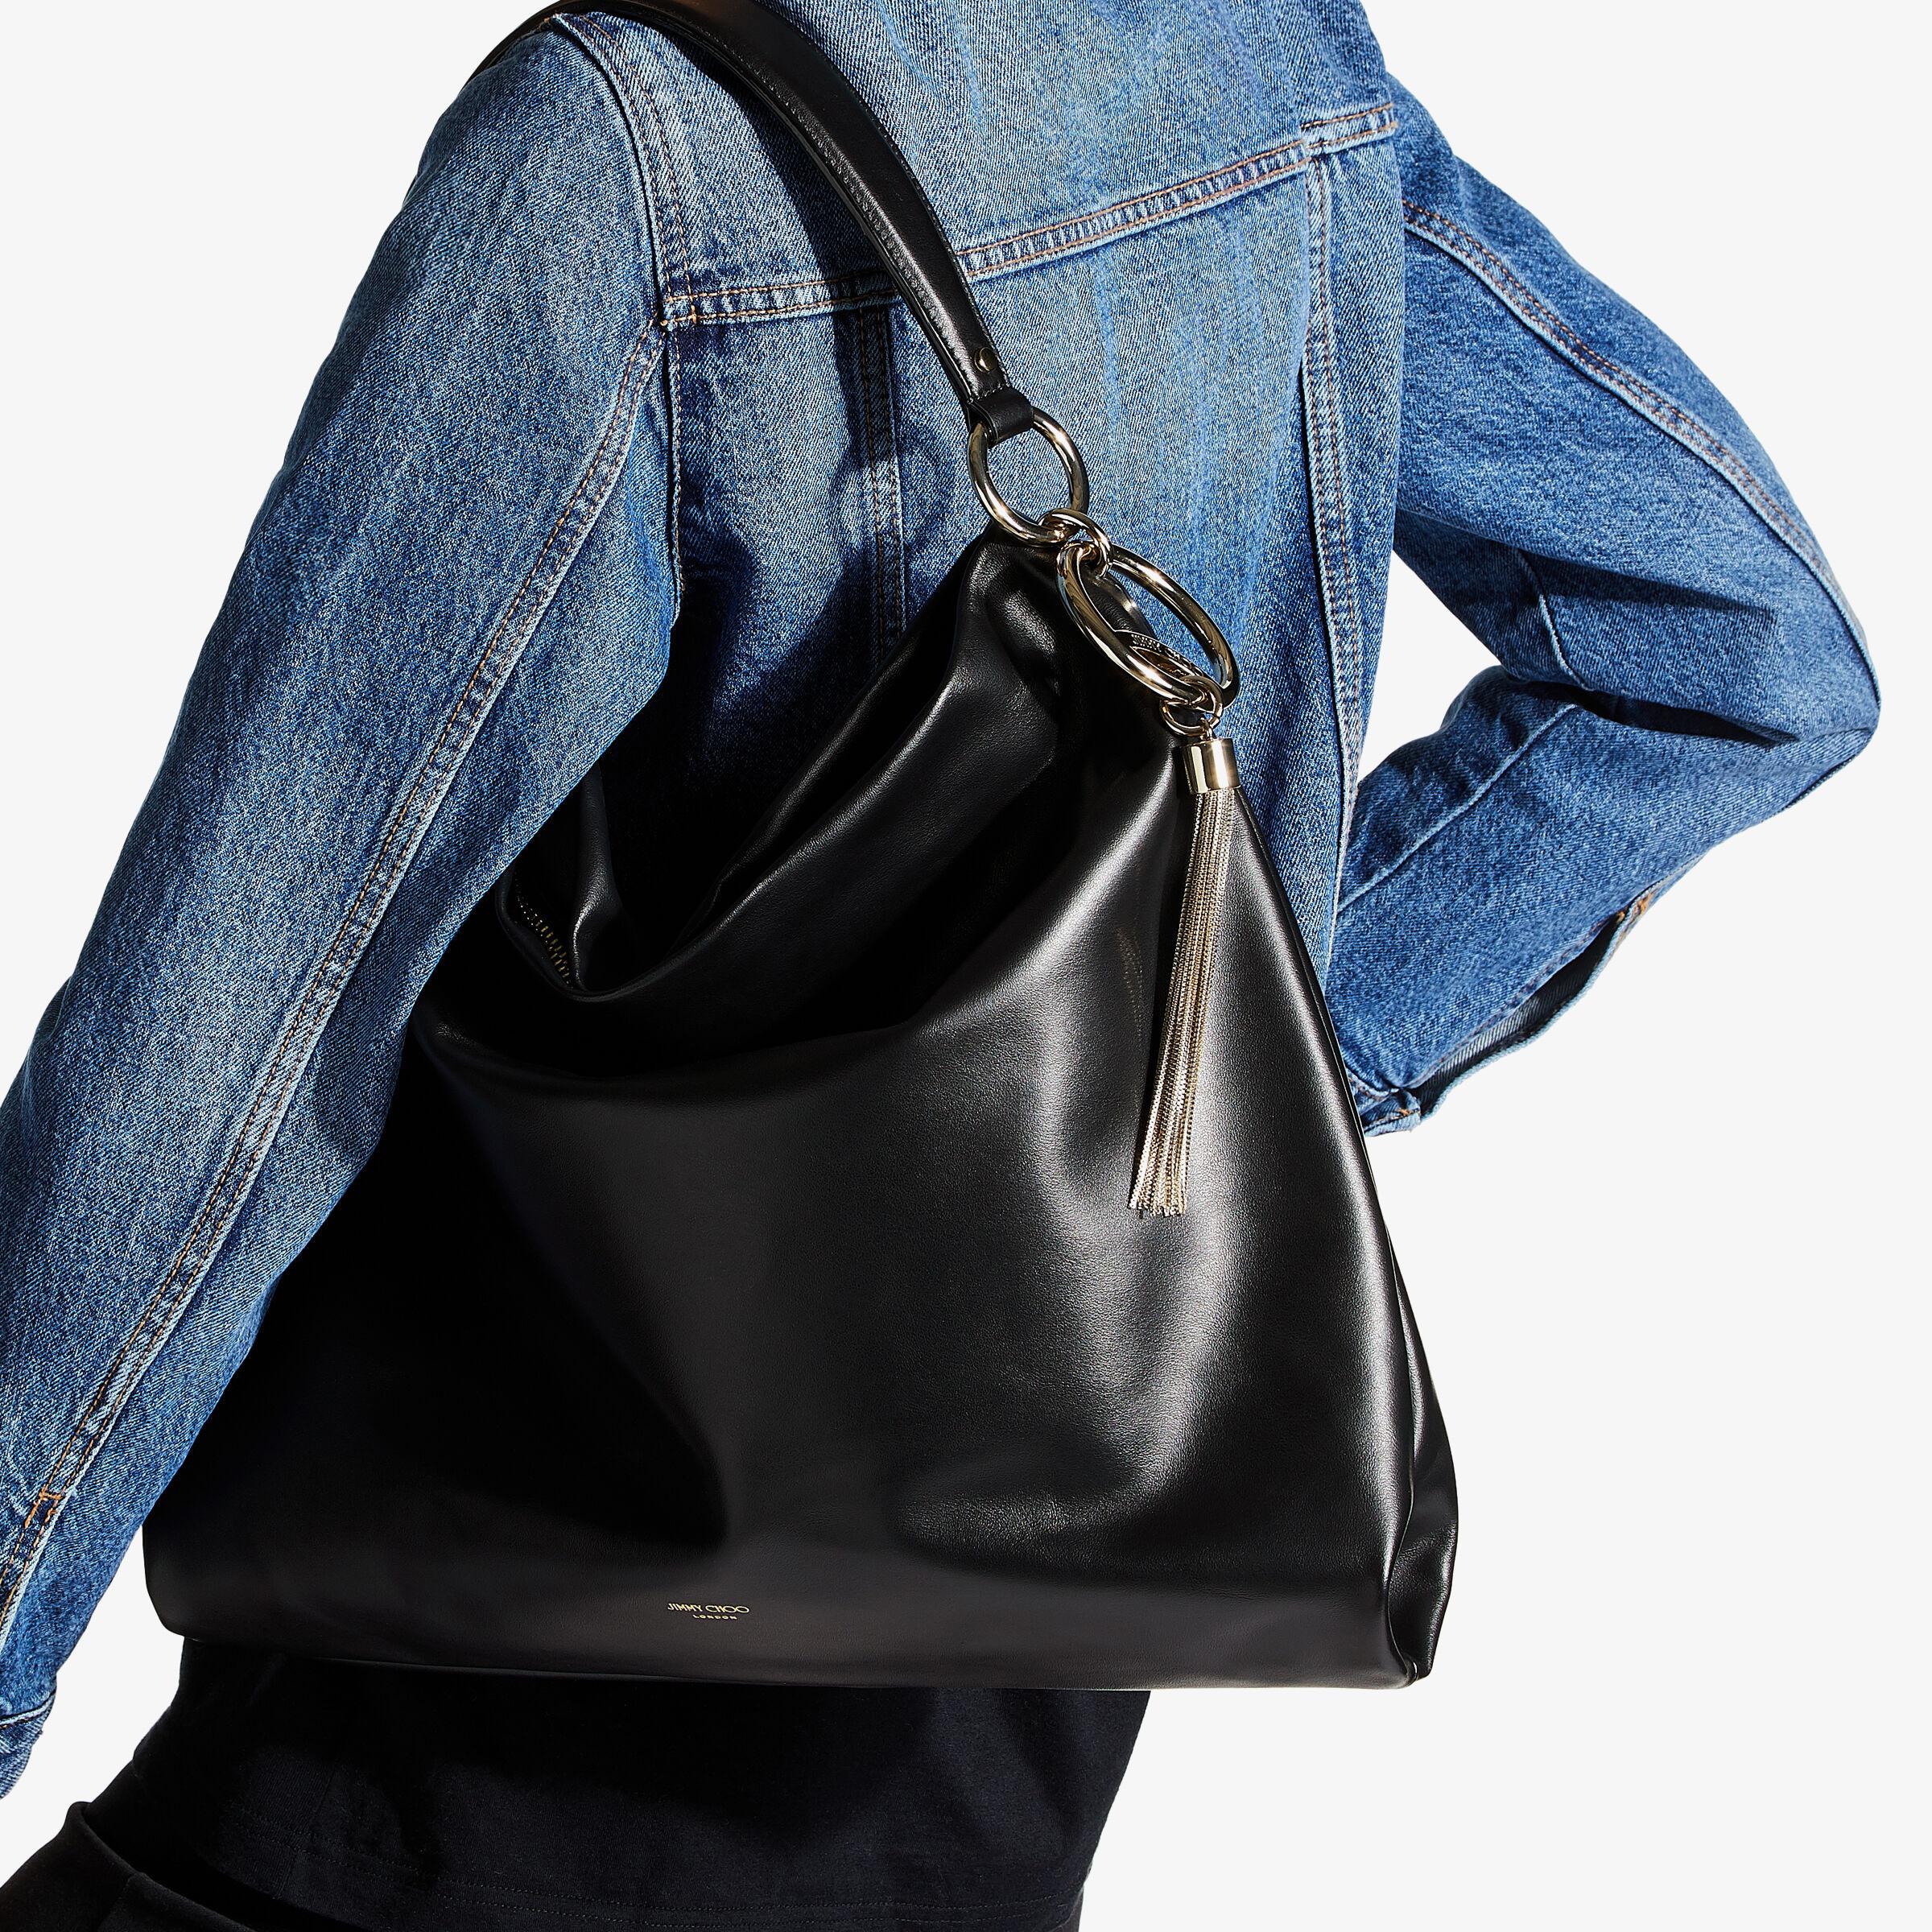 Jimmy Choo Callie Leather Hobo Bag in Black | Lyst